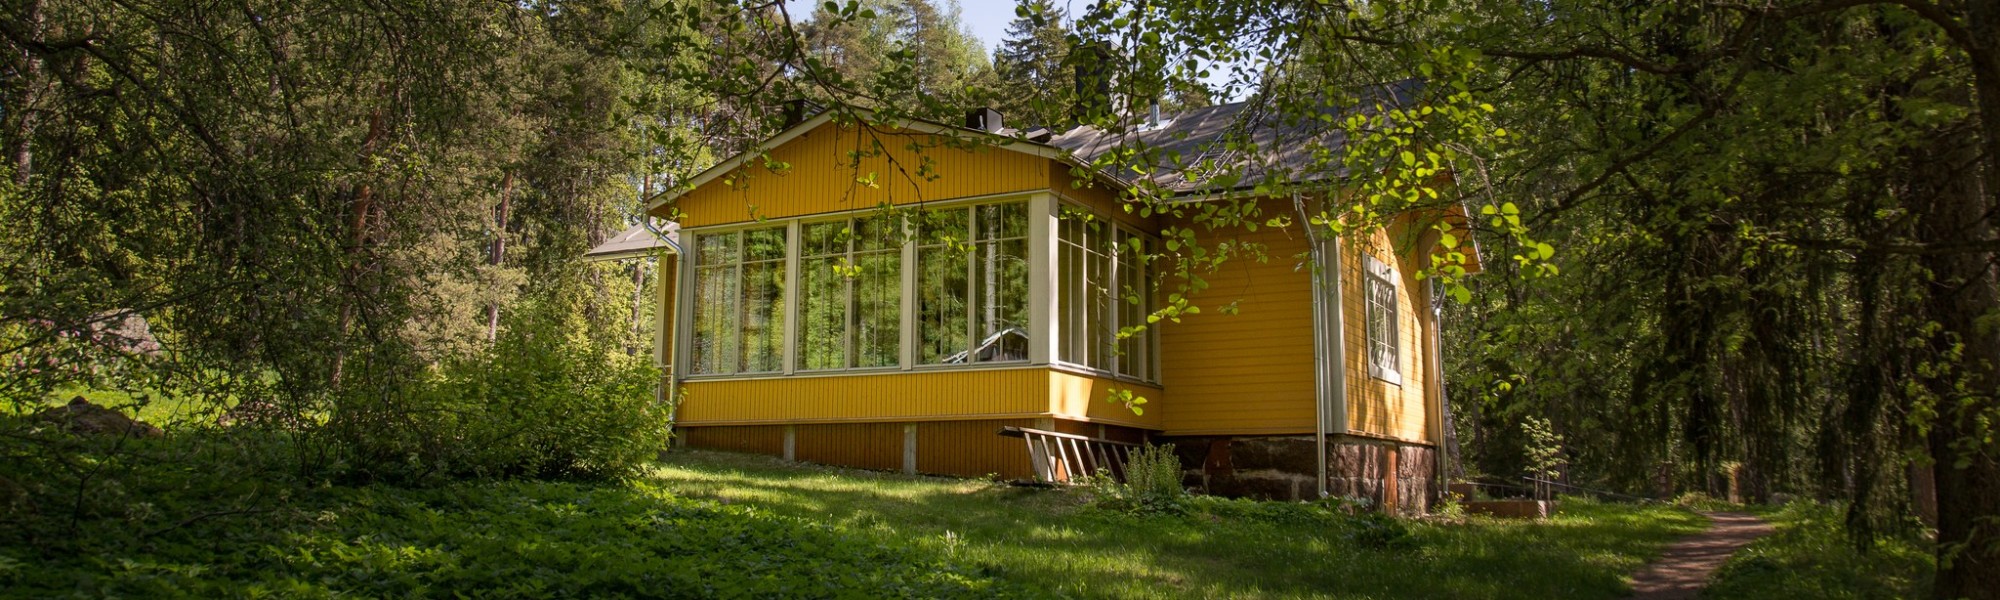 Keltainen talo kesämaisemassa